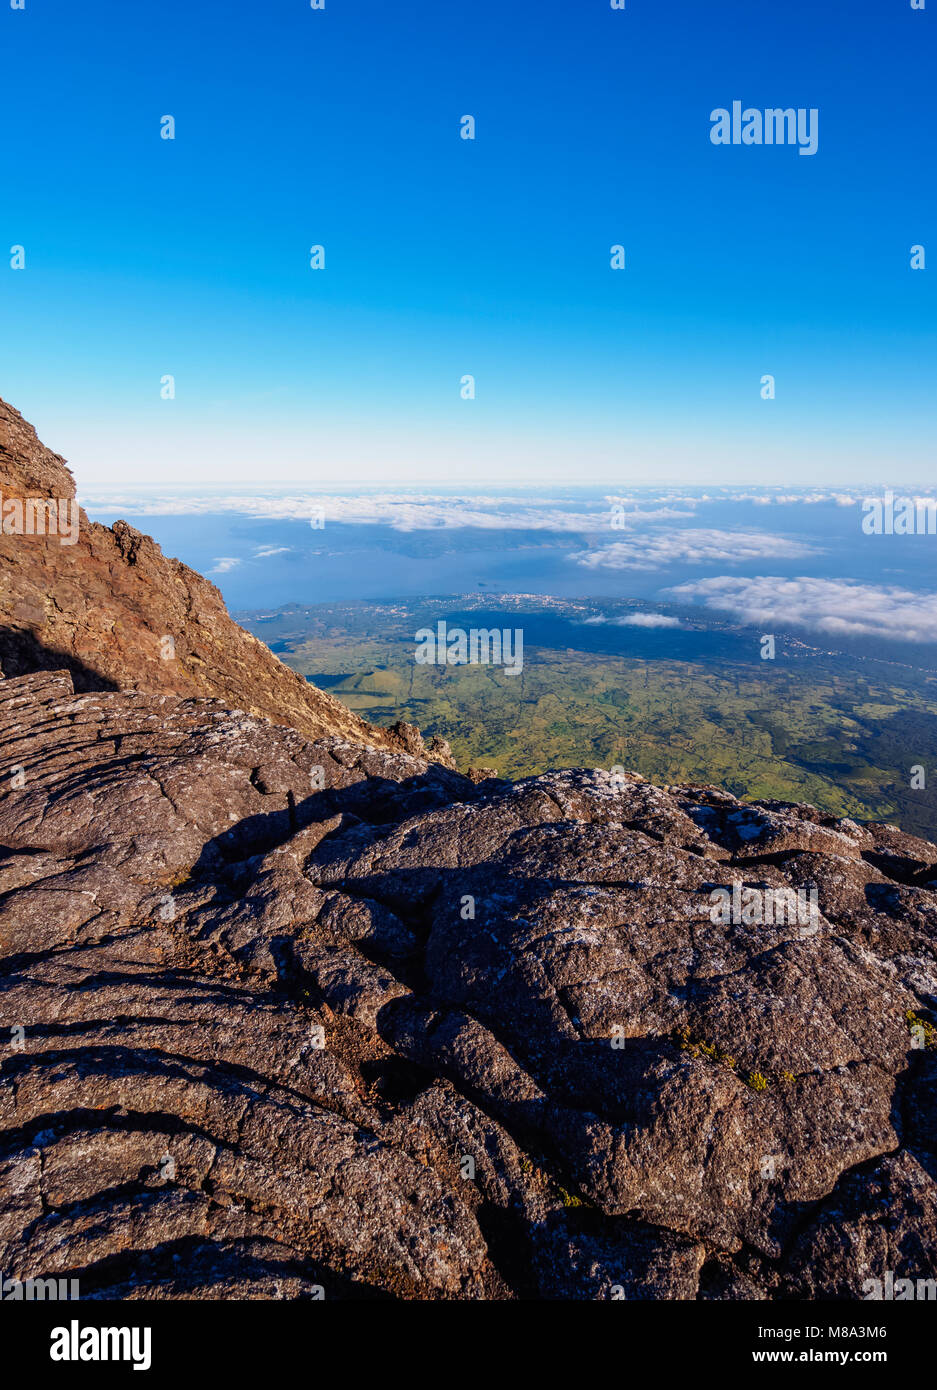 Edge of Pico Alto on the summit of Pico, Pico Island, Azores, Portugal Stock Photo